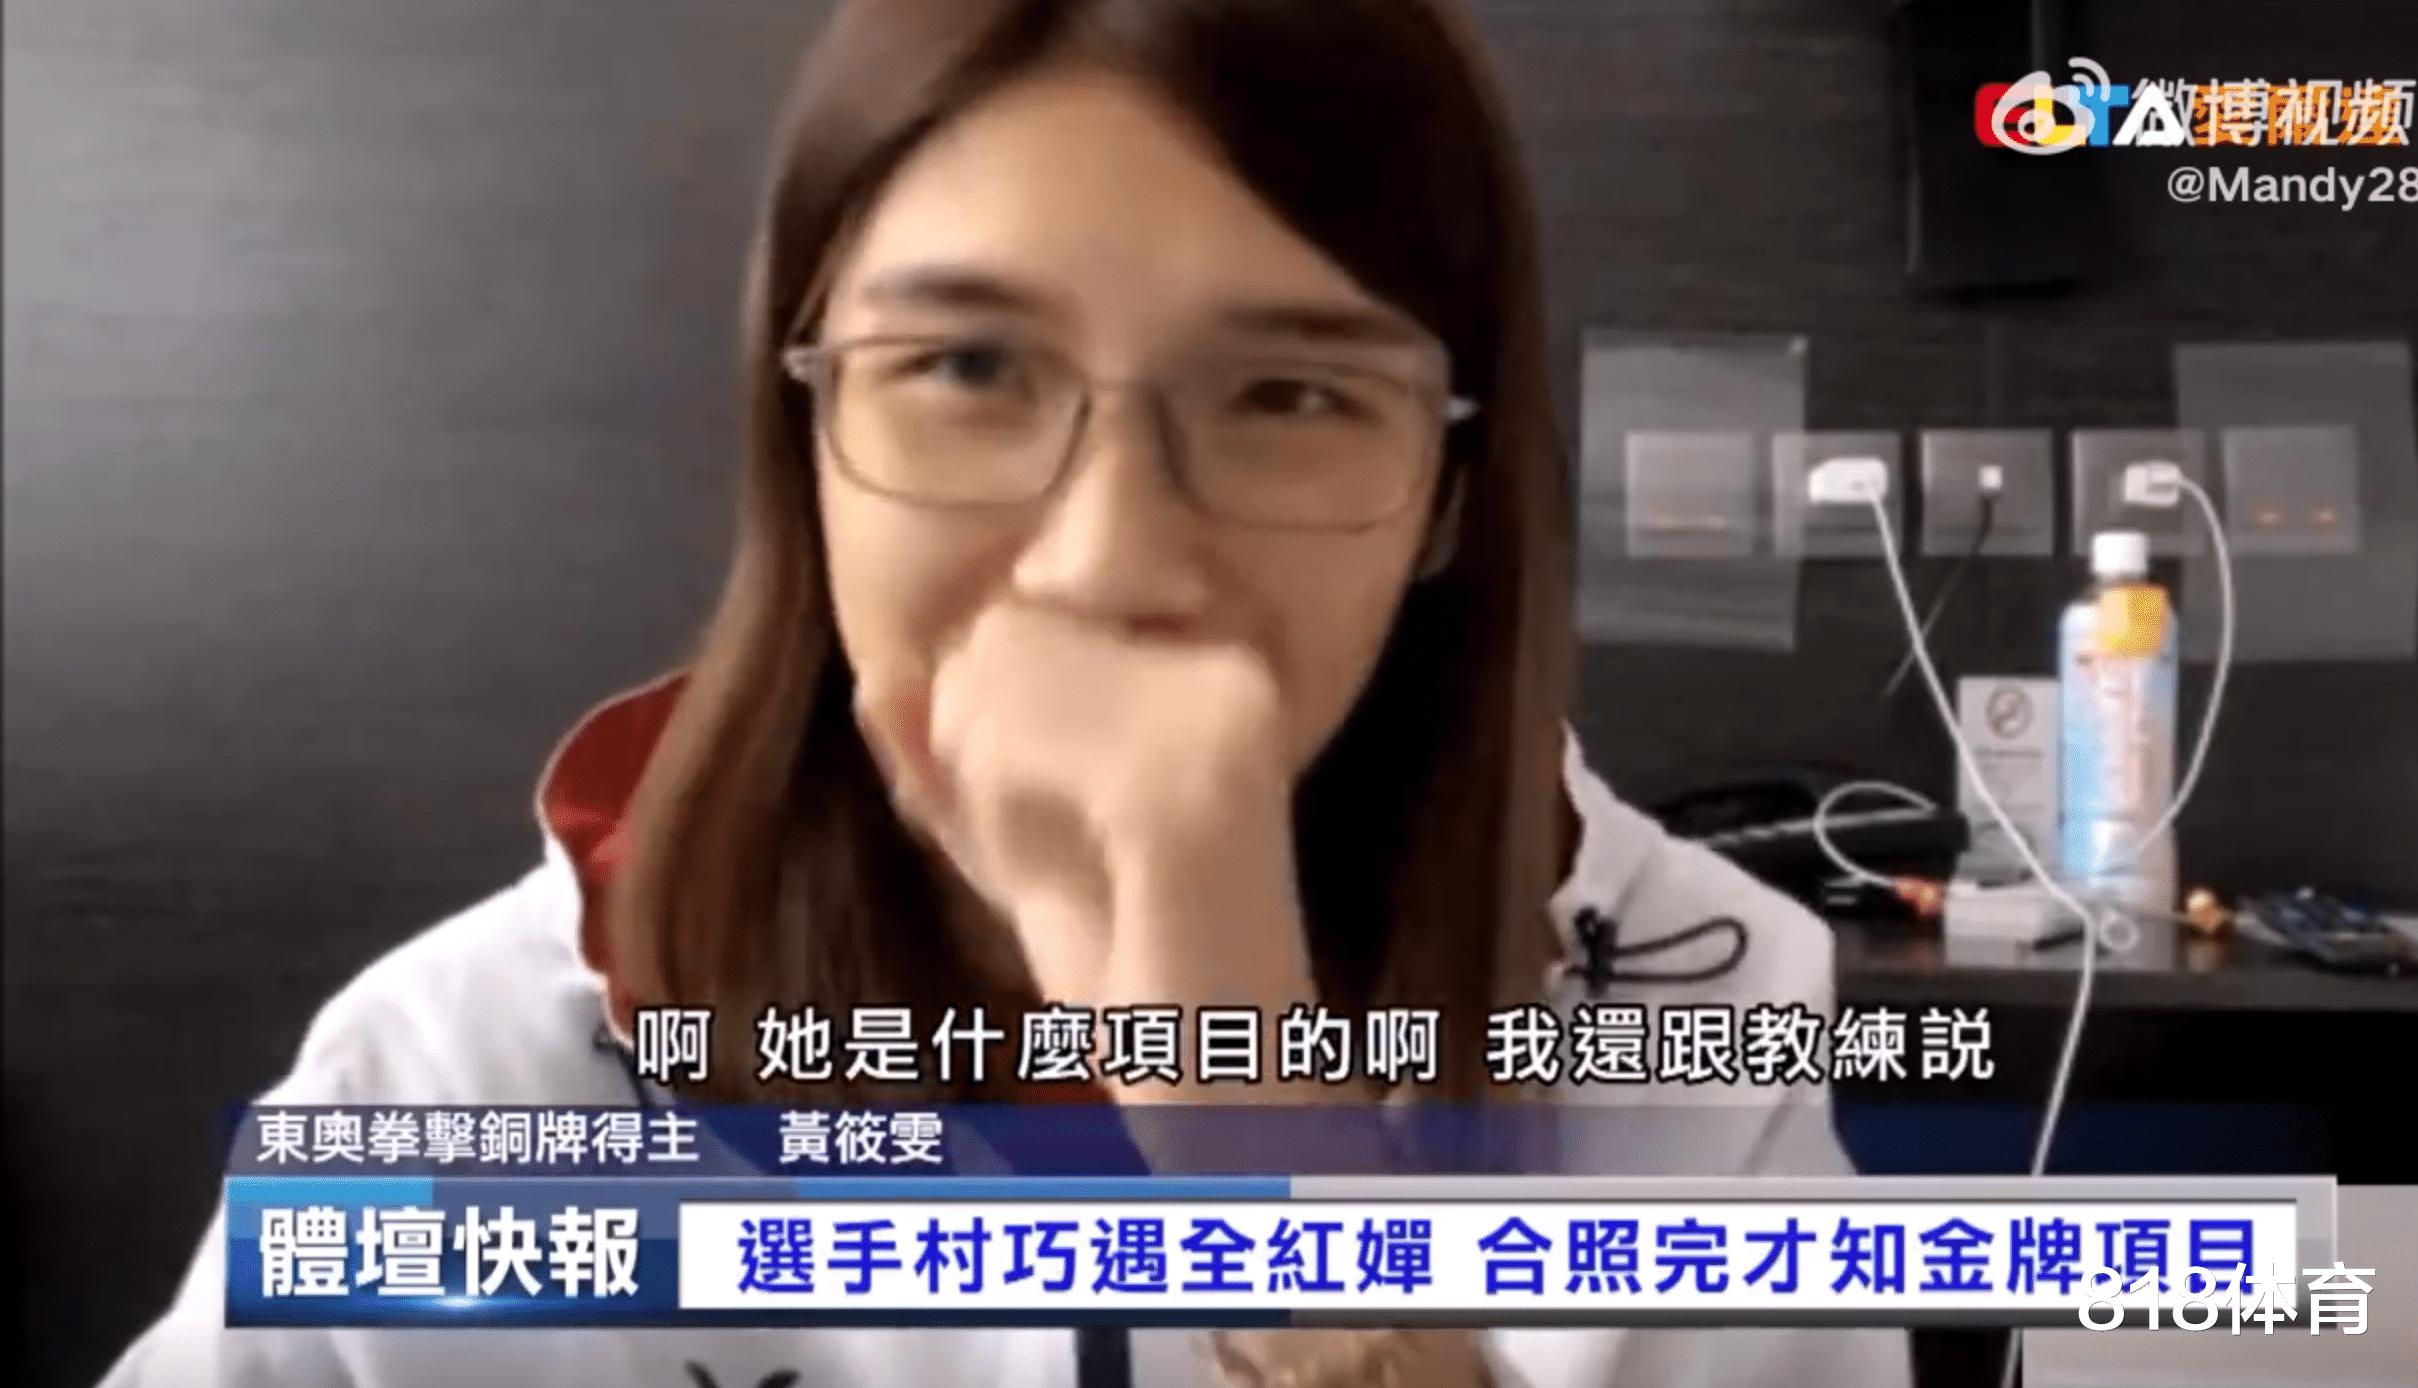 笑喷! 台北省队选手不识全红婵: 看到外国教练追星我们也去 不知她啥项目(6)